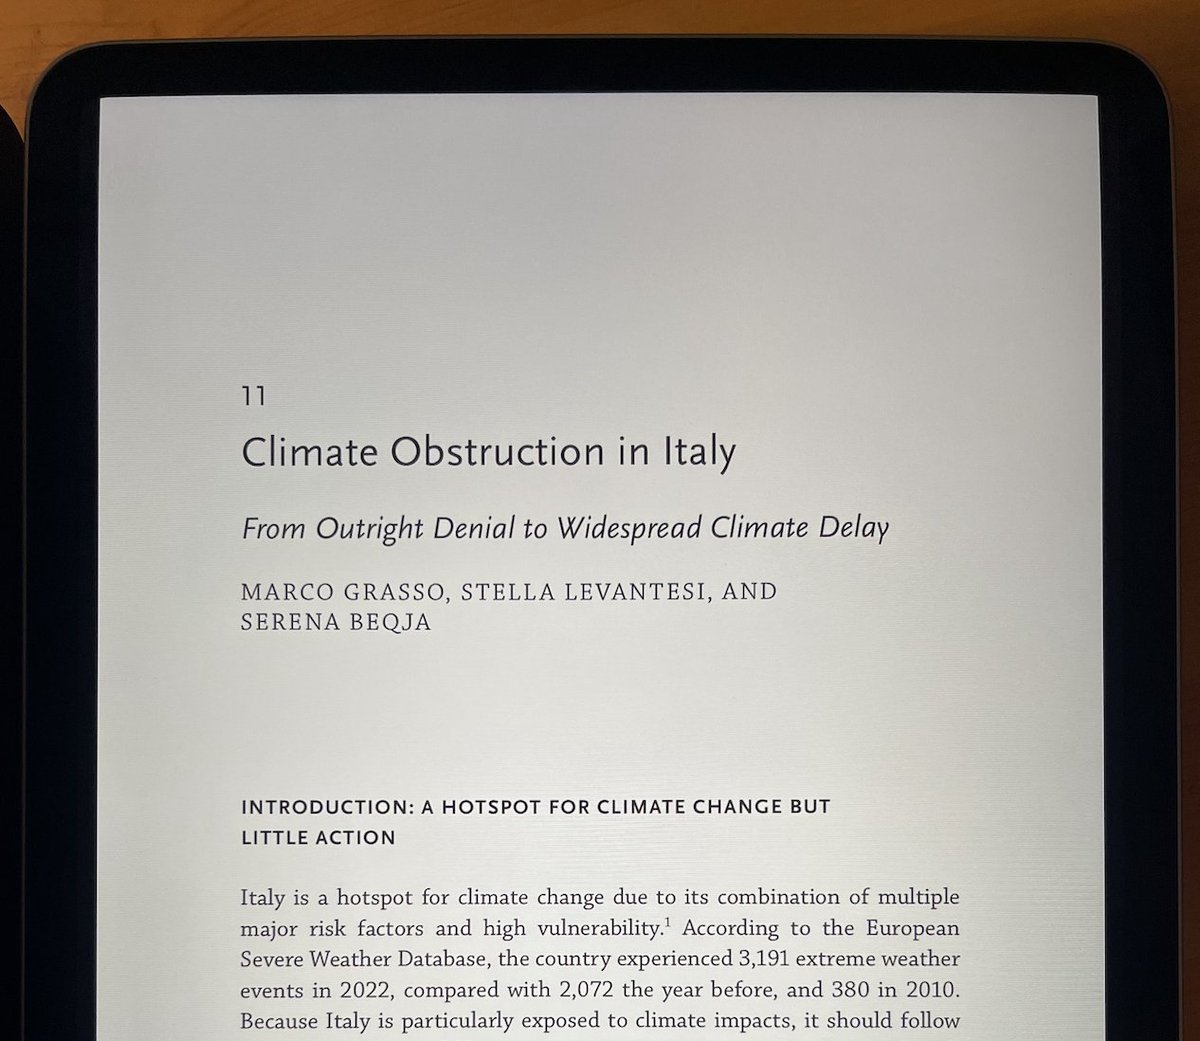 Chi sta ostacolando l'azione per il clima in Italia e come? Ne parlo con @MGGrasso @serenabeqja in un capitolo dedicato nel nuovo libro 'Climate Obstruction Across Europe' coordinato da @ClimateSSN e pubblicato da @OxUniPress 👇 cssn.org/news-research/…